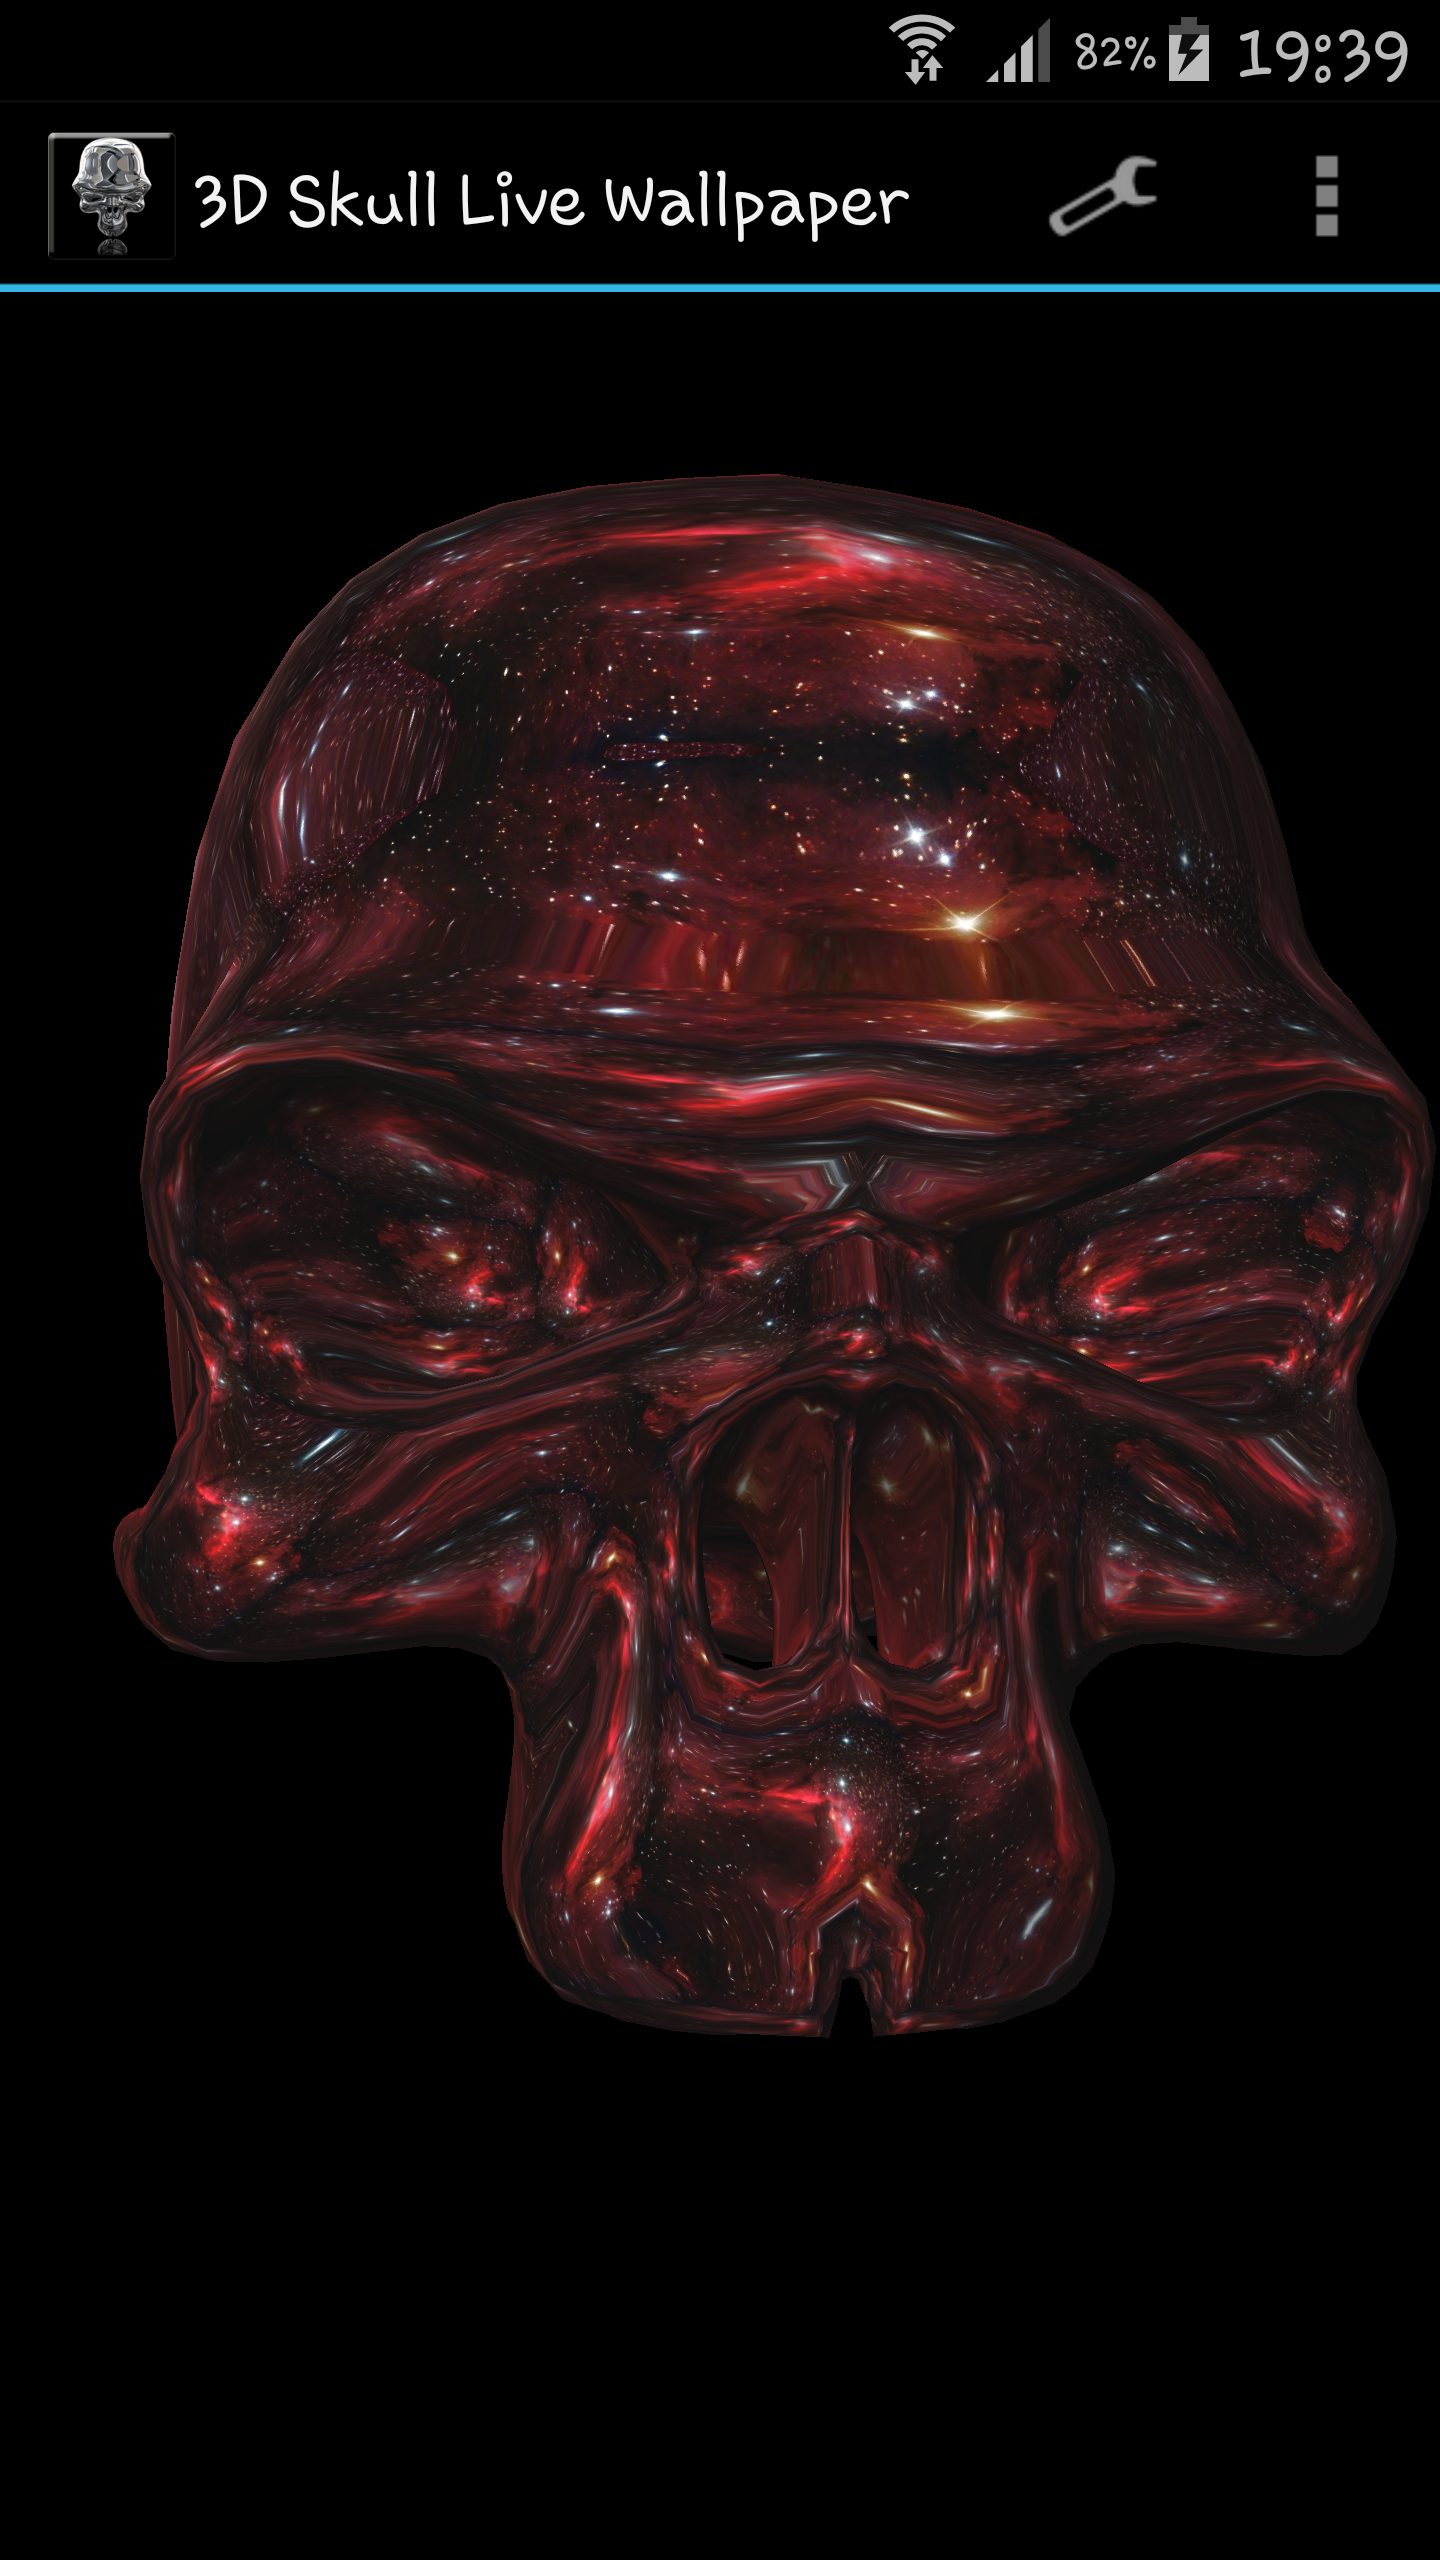 cráneo live wallpaper 3d,cabeza,cráneo,mandíbula,hueso,personaje de ficción